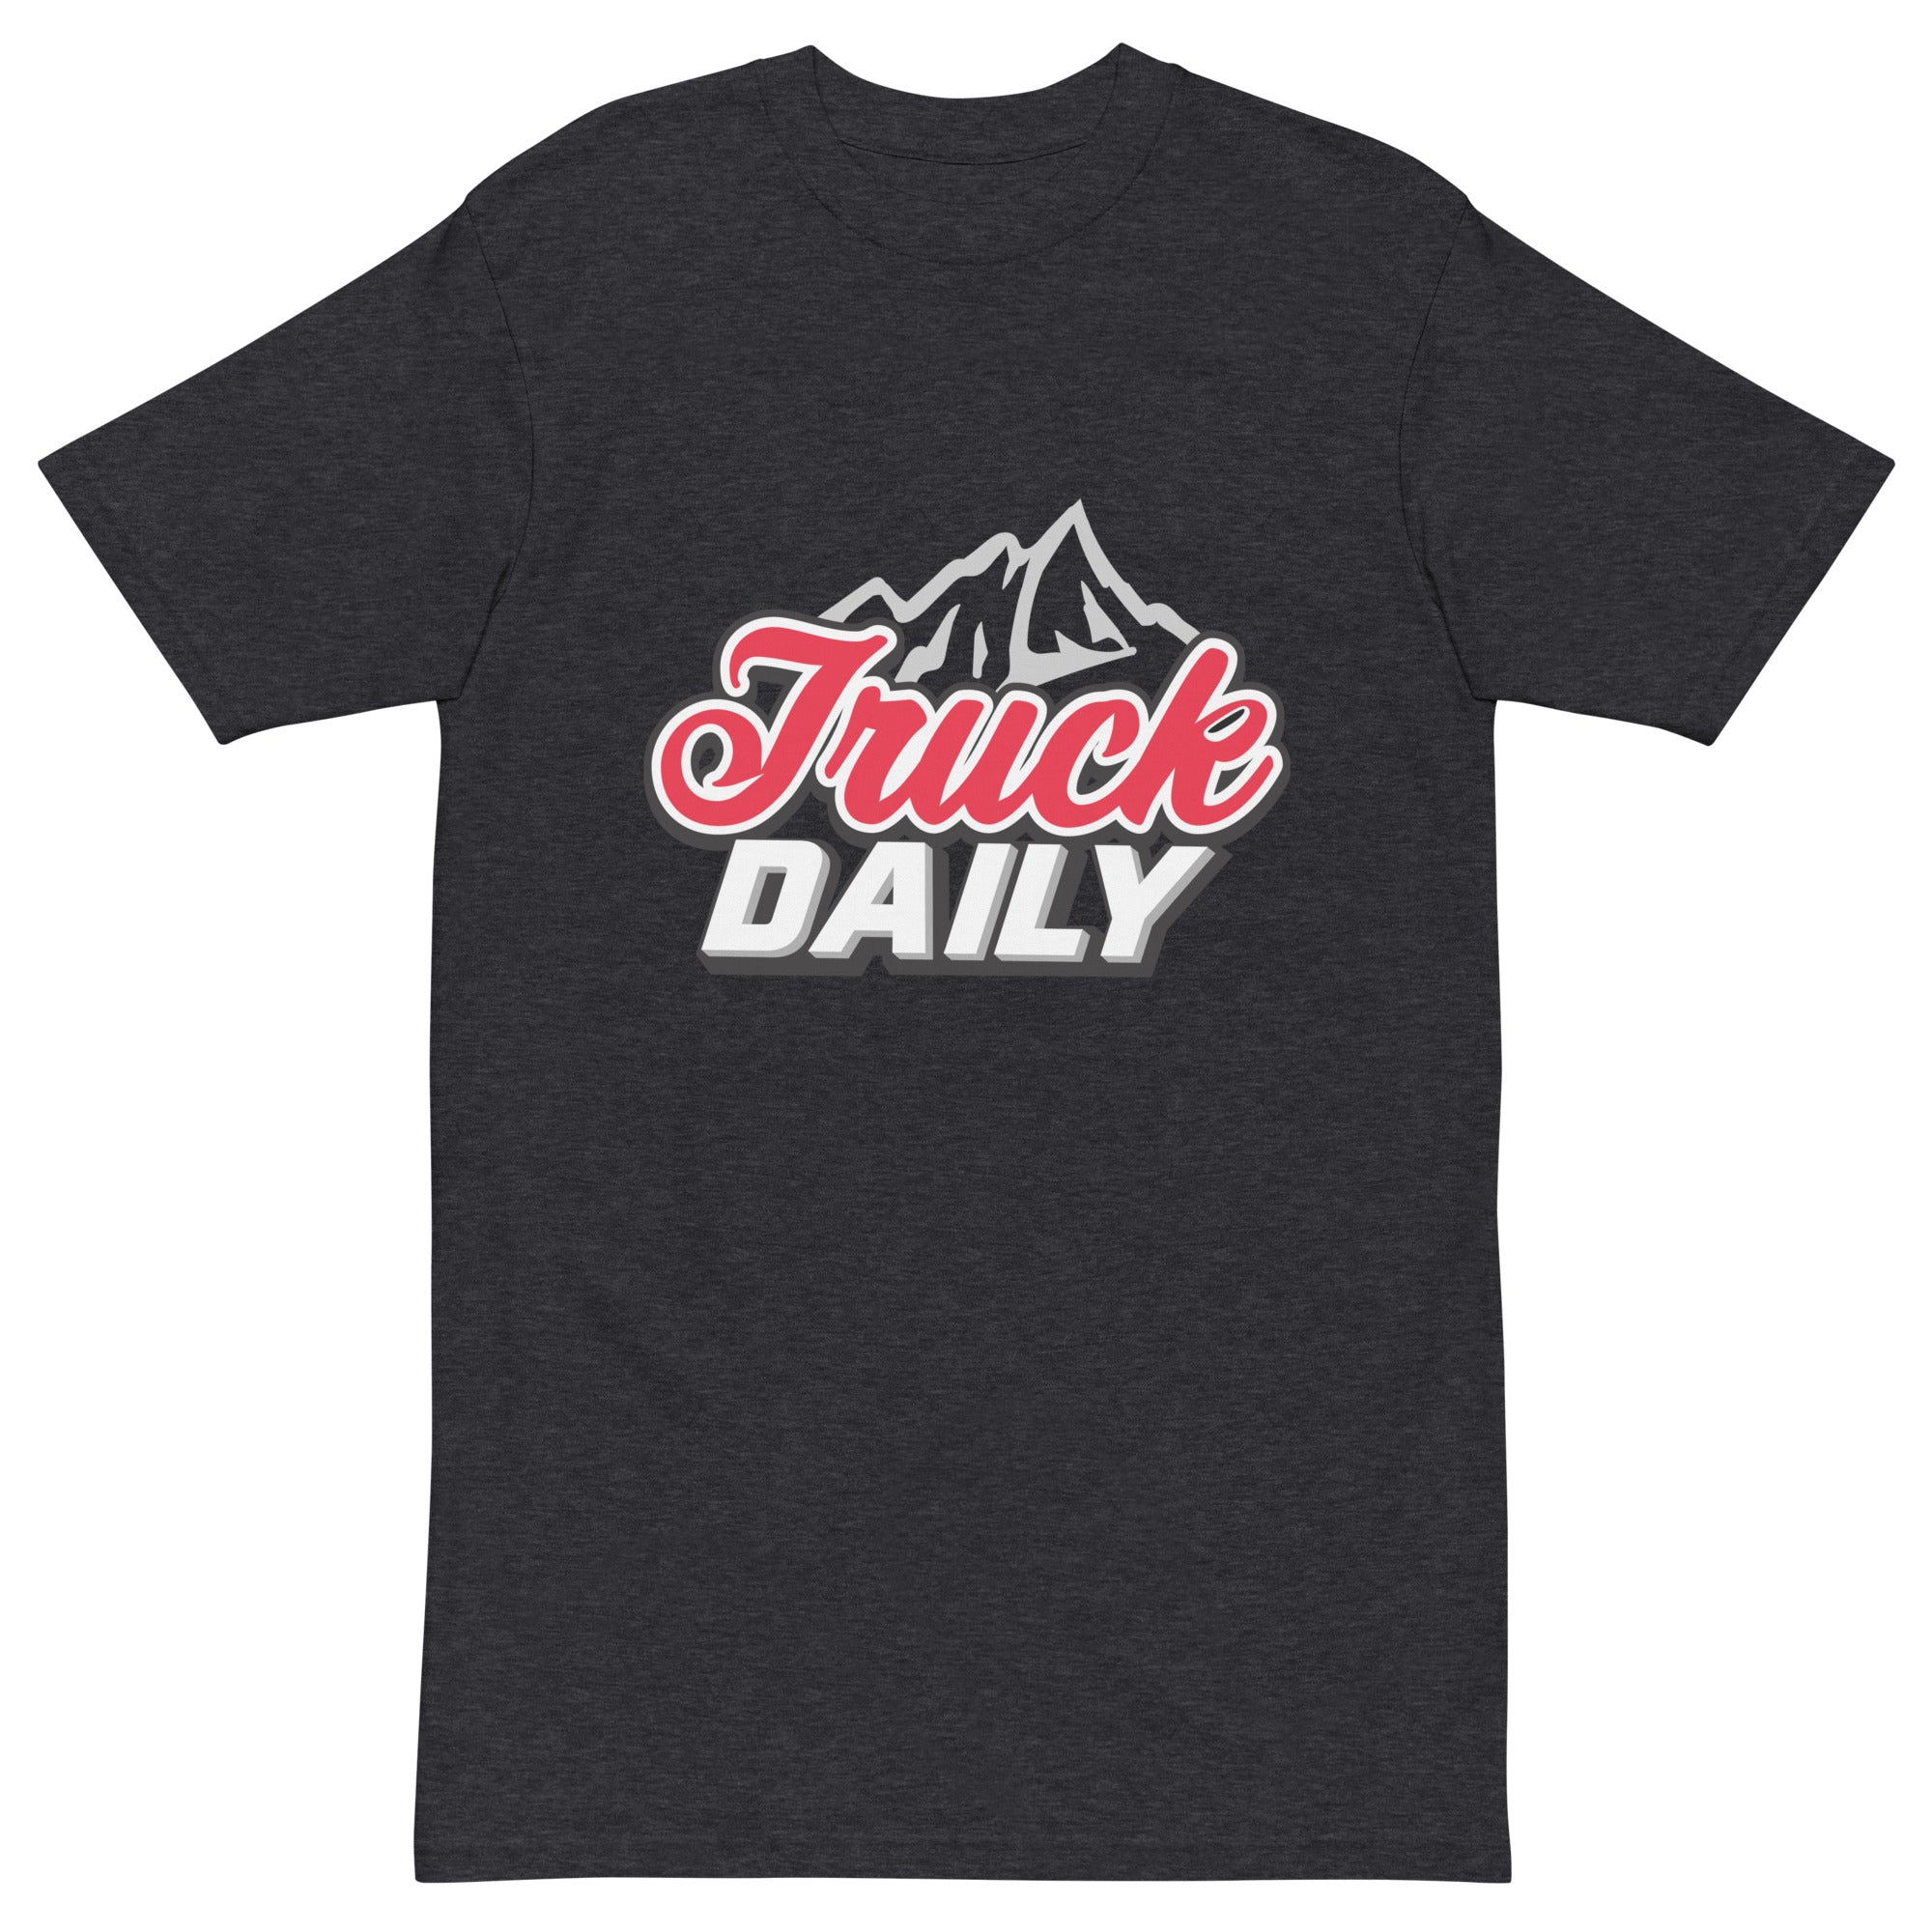 TruckDaily Coors Light Shirt